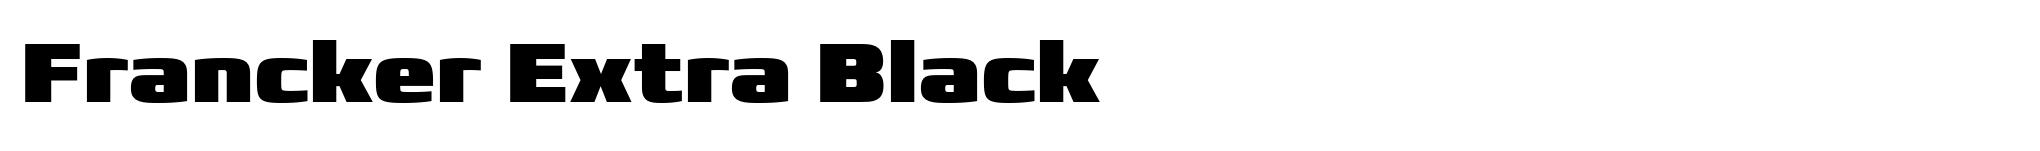 Francker Extra Black image